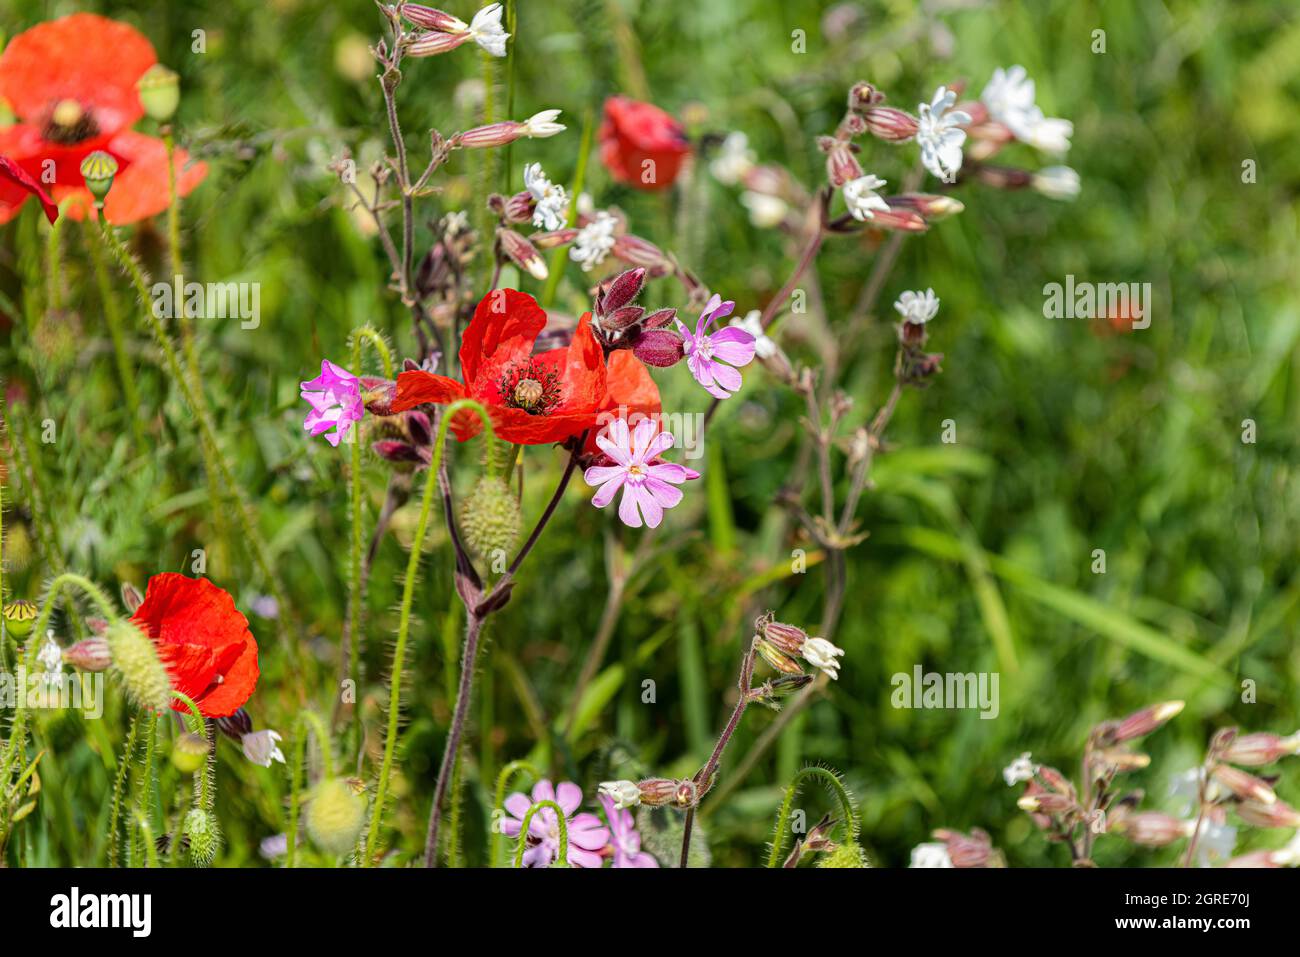 Gemeine Mohnblumen Papaver Rhoeas und rosa Campion Silene dioica Wildblumen wachsen auf einem Feld. Stockfoto